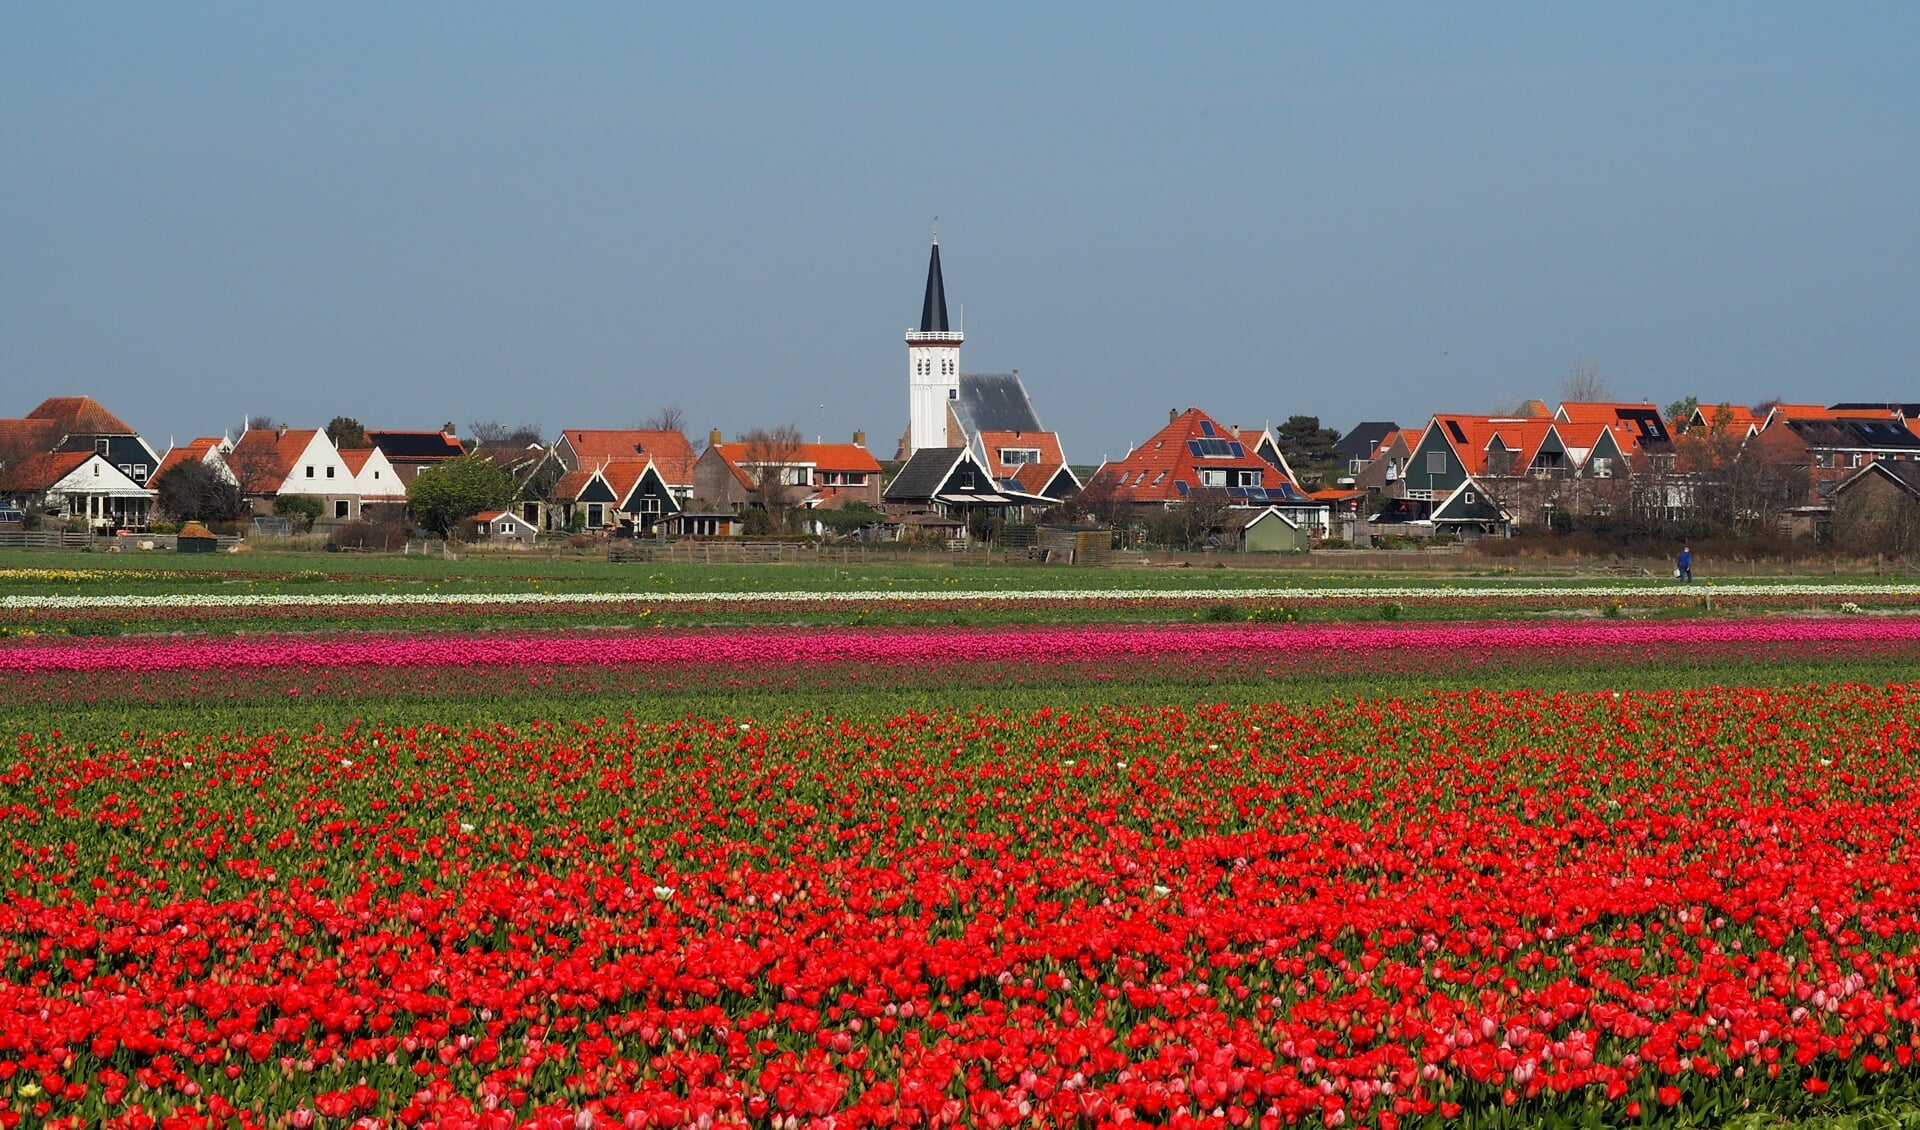 Het karakteristieke dorpsgezicht van Den Hoorn in augustus 2020.